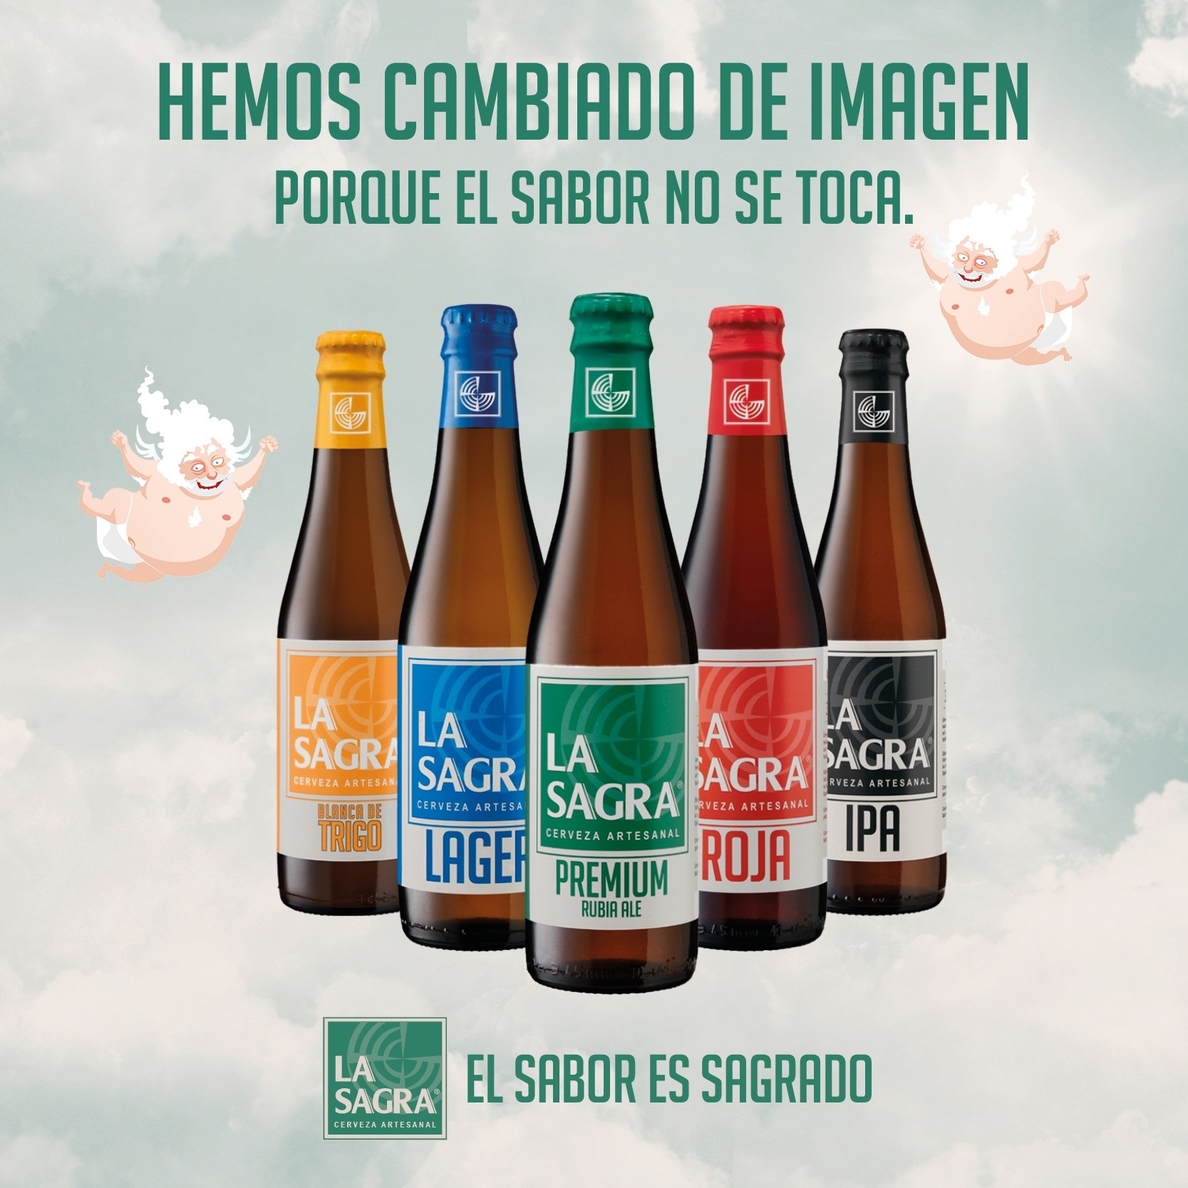 La cerveza artesanal La Sagra eleva sus ventas un 84% en hostelería y renueva su imagen